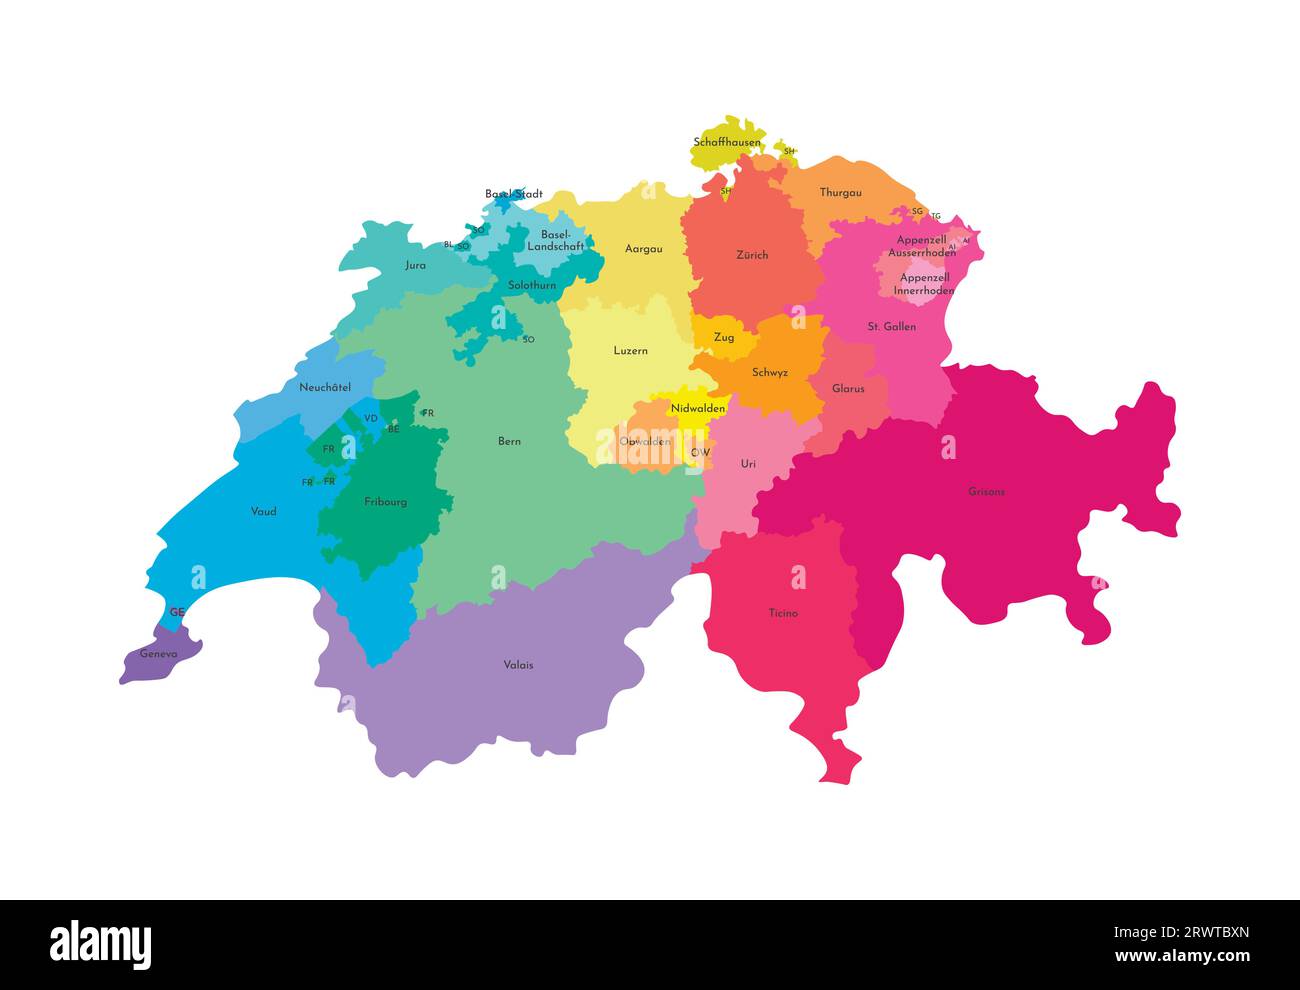 Vektorisolierte Darstellung einer vereinfachten Verwaltungskarte der Schweiz. Grenzen und Namen der Regionen. Mehrfarbige Silhouetten. Stock Vektor